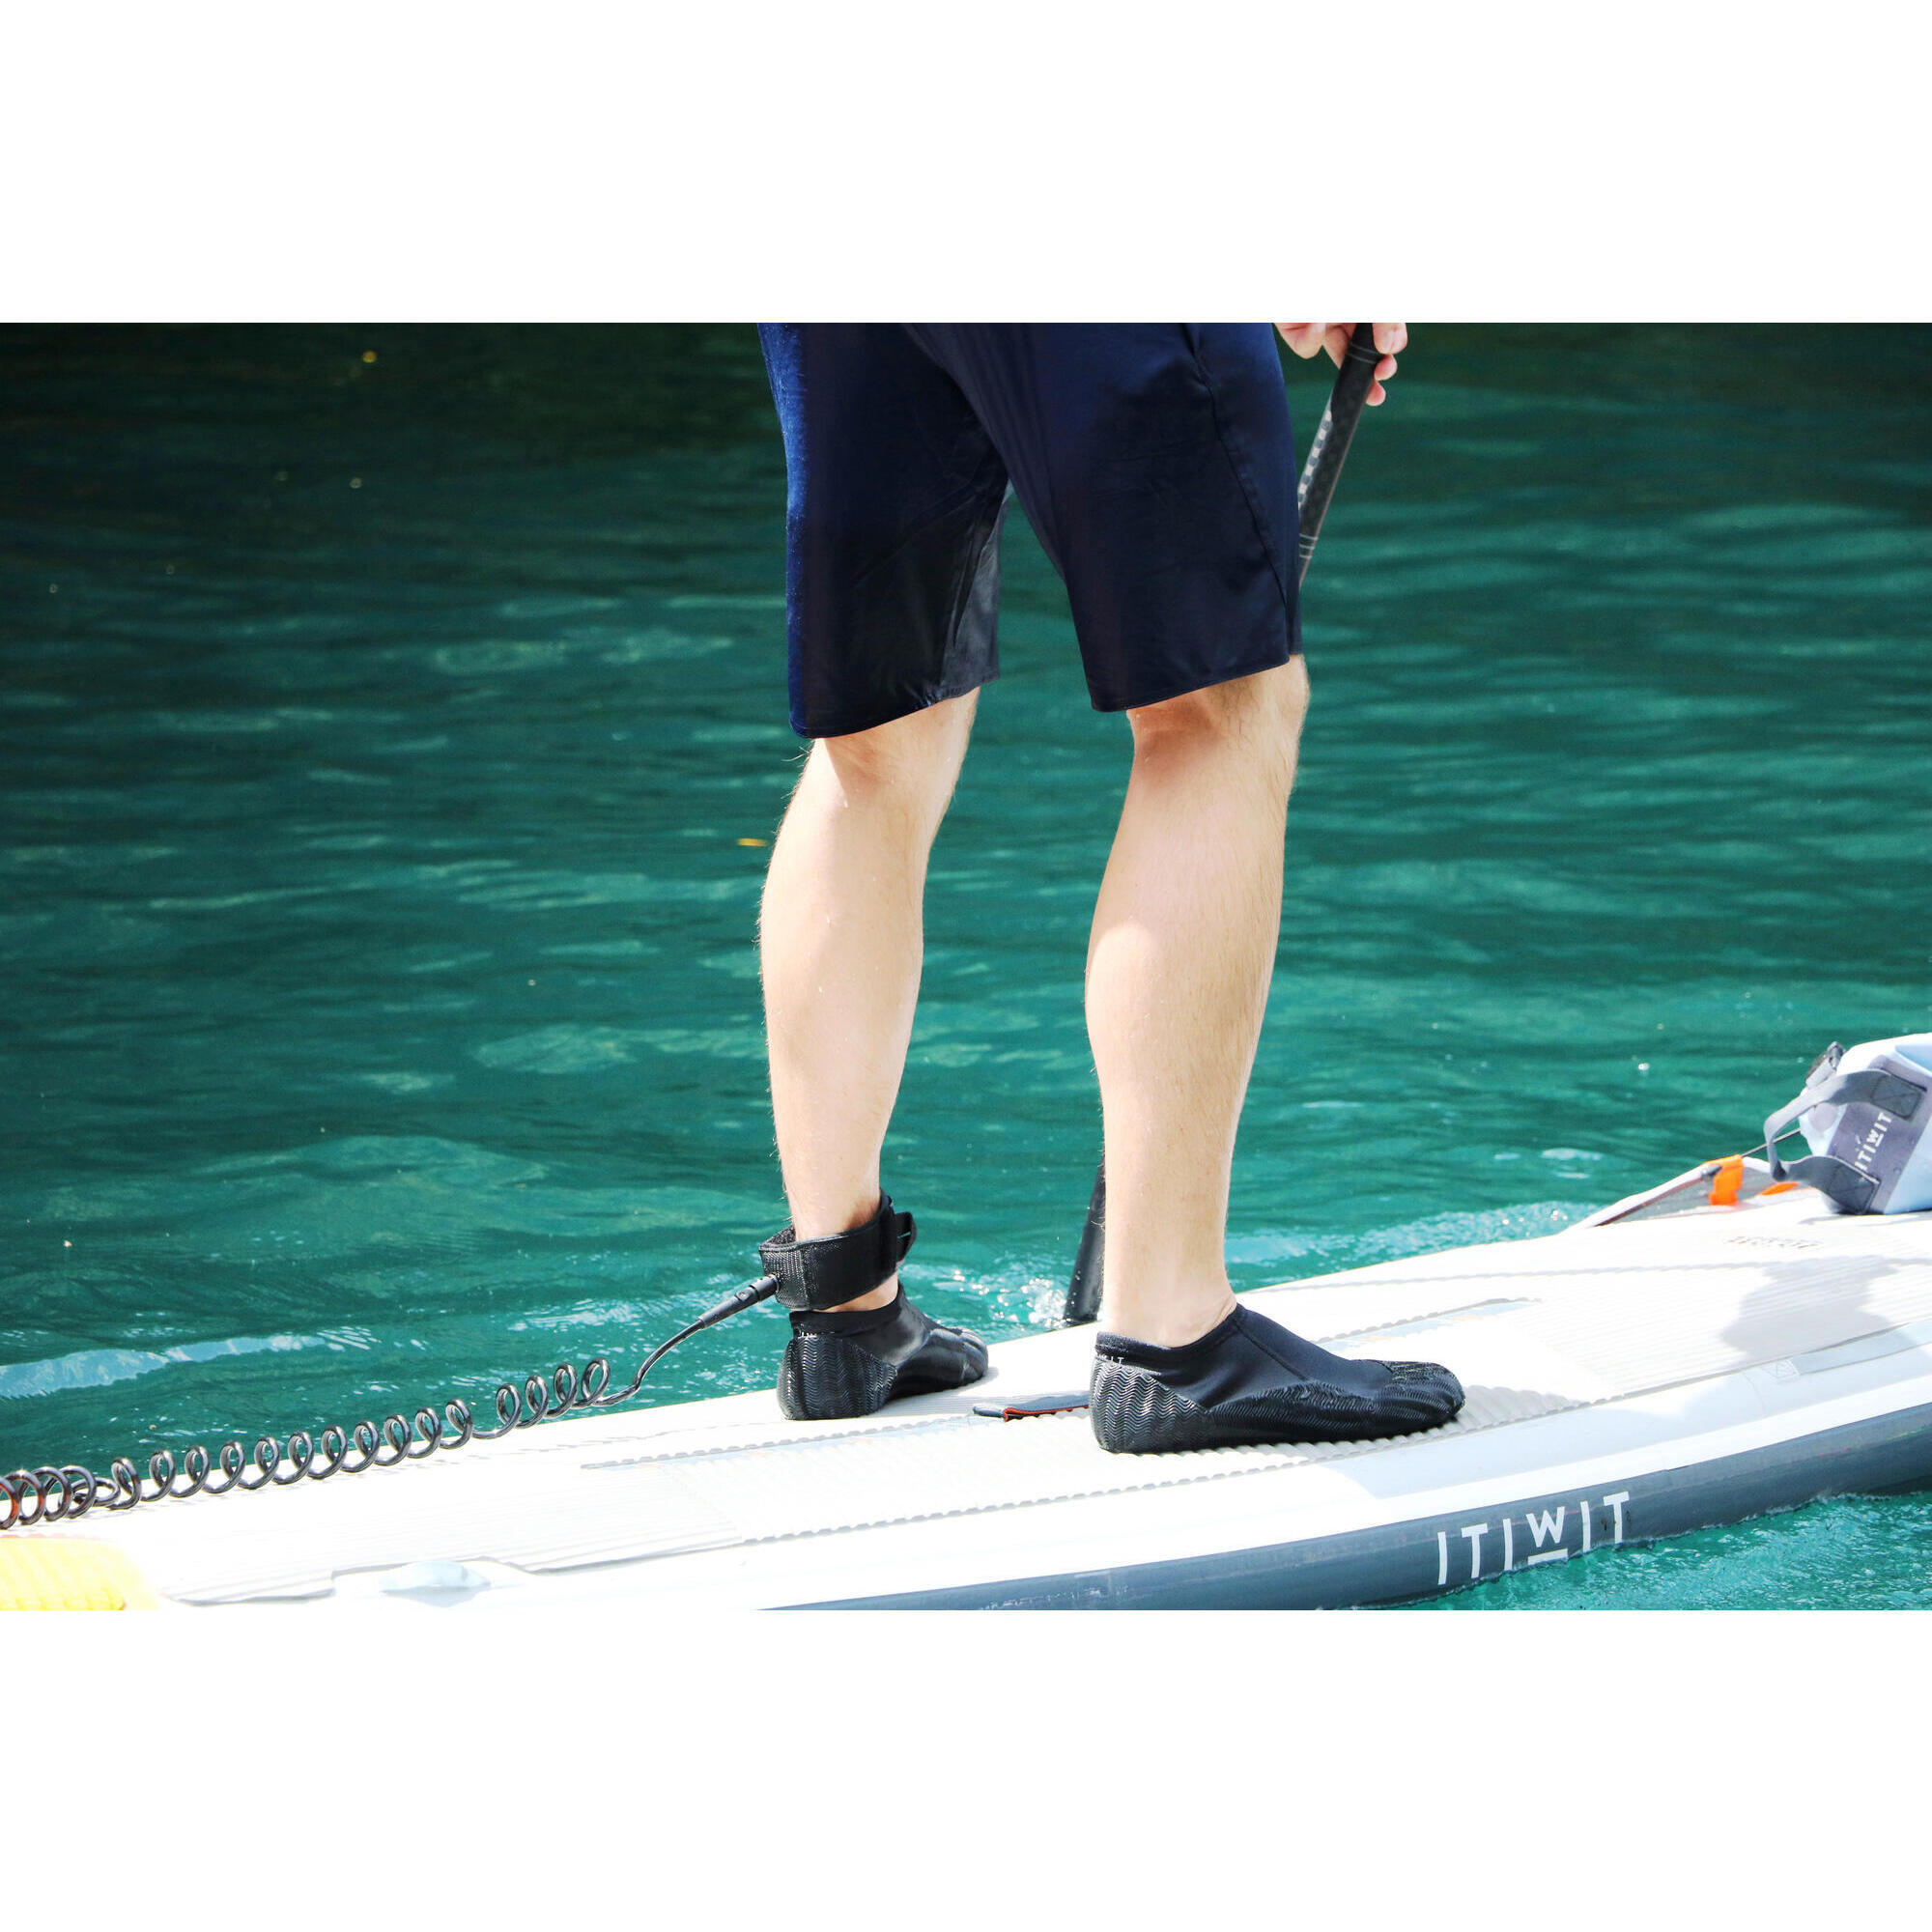 Kayak/SUP shoes in 1.5 mm neoprene 2/8